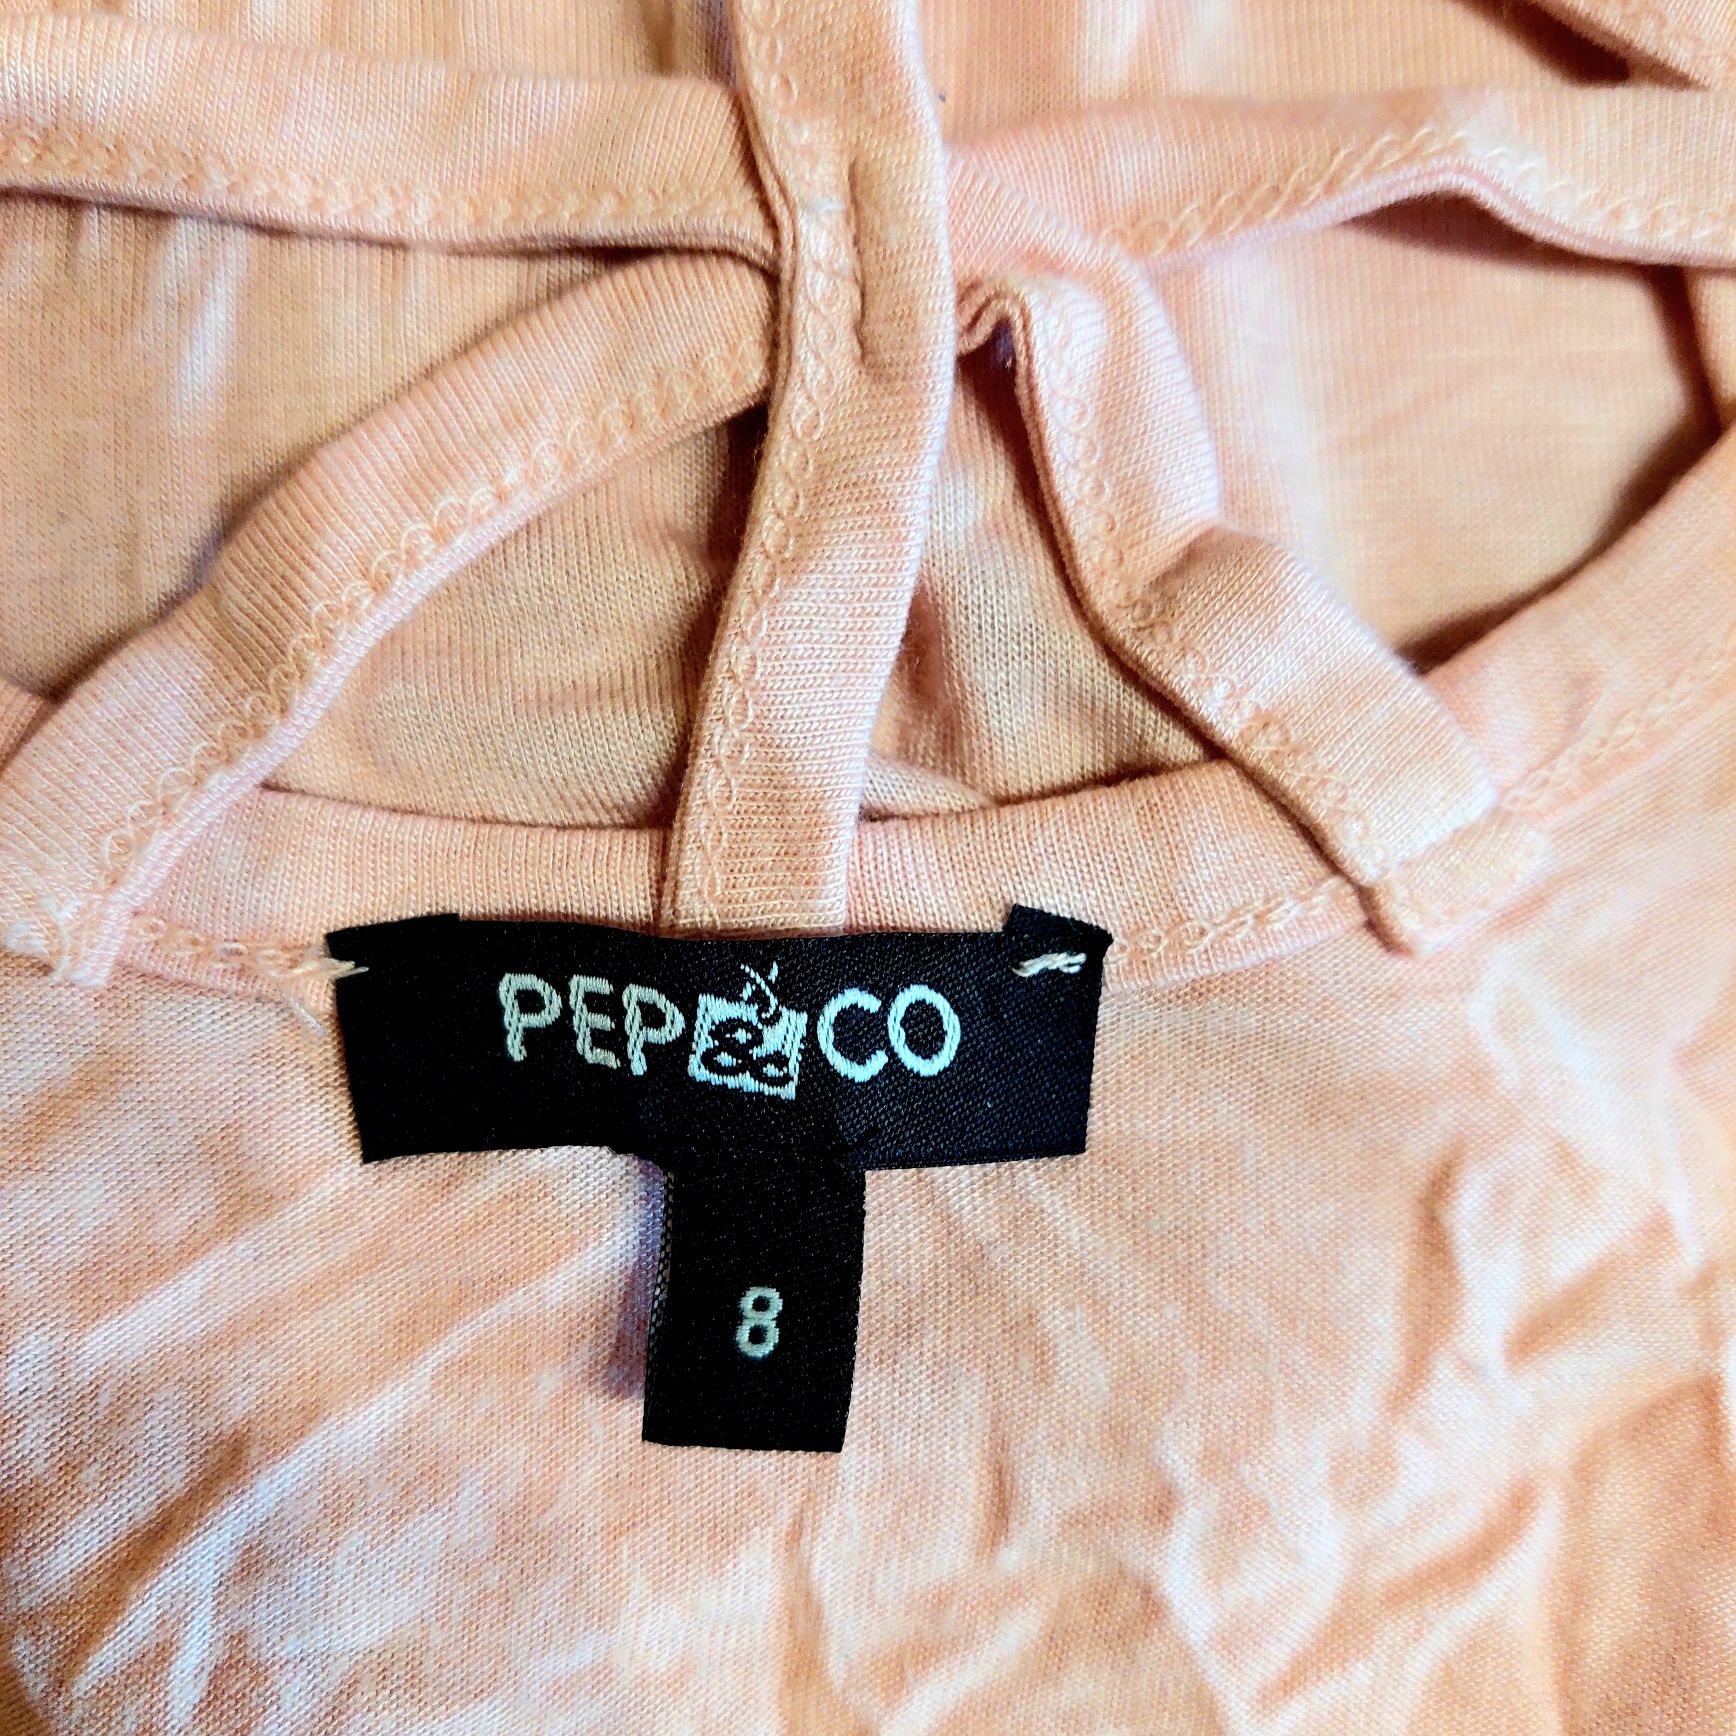 Bluzka damska, pudrowa, różowa, 36/S, Pepco.